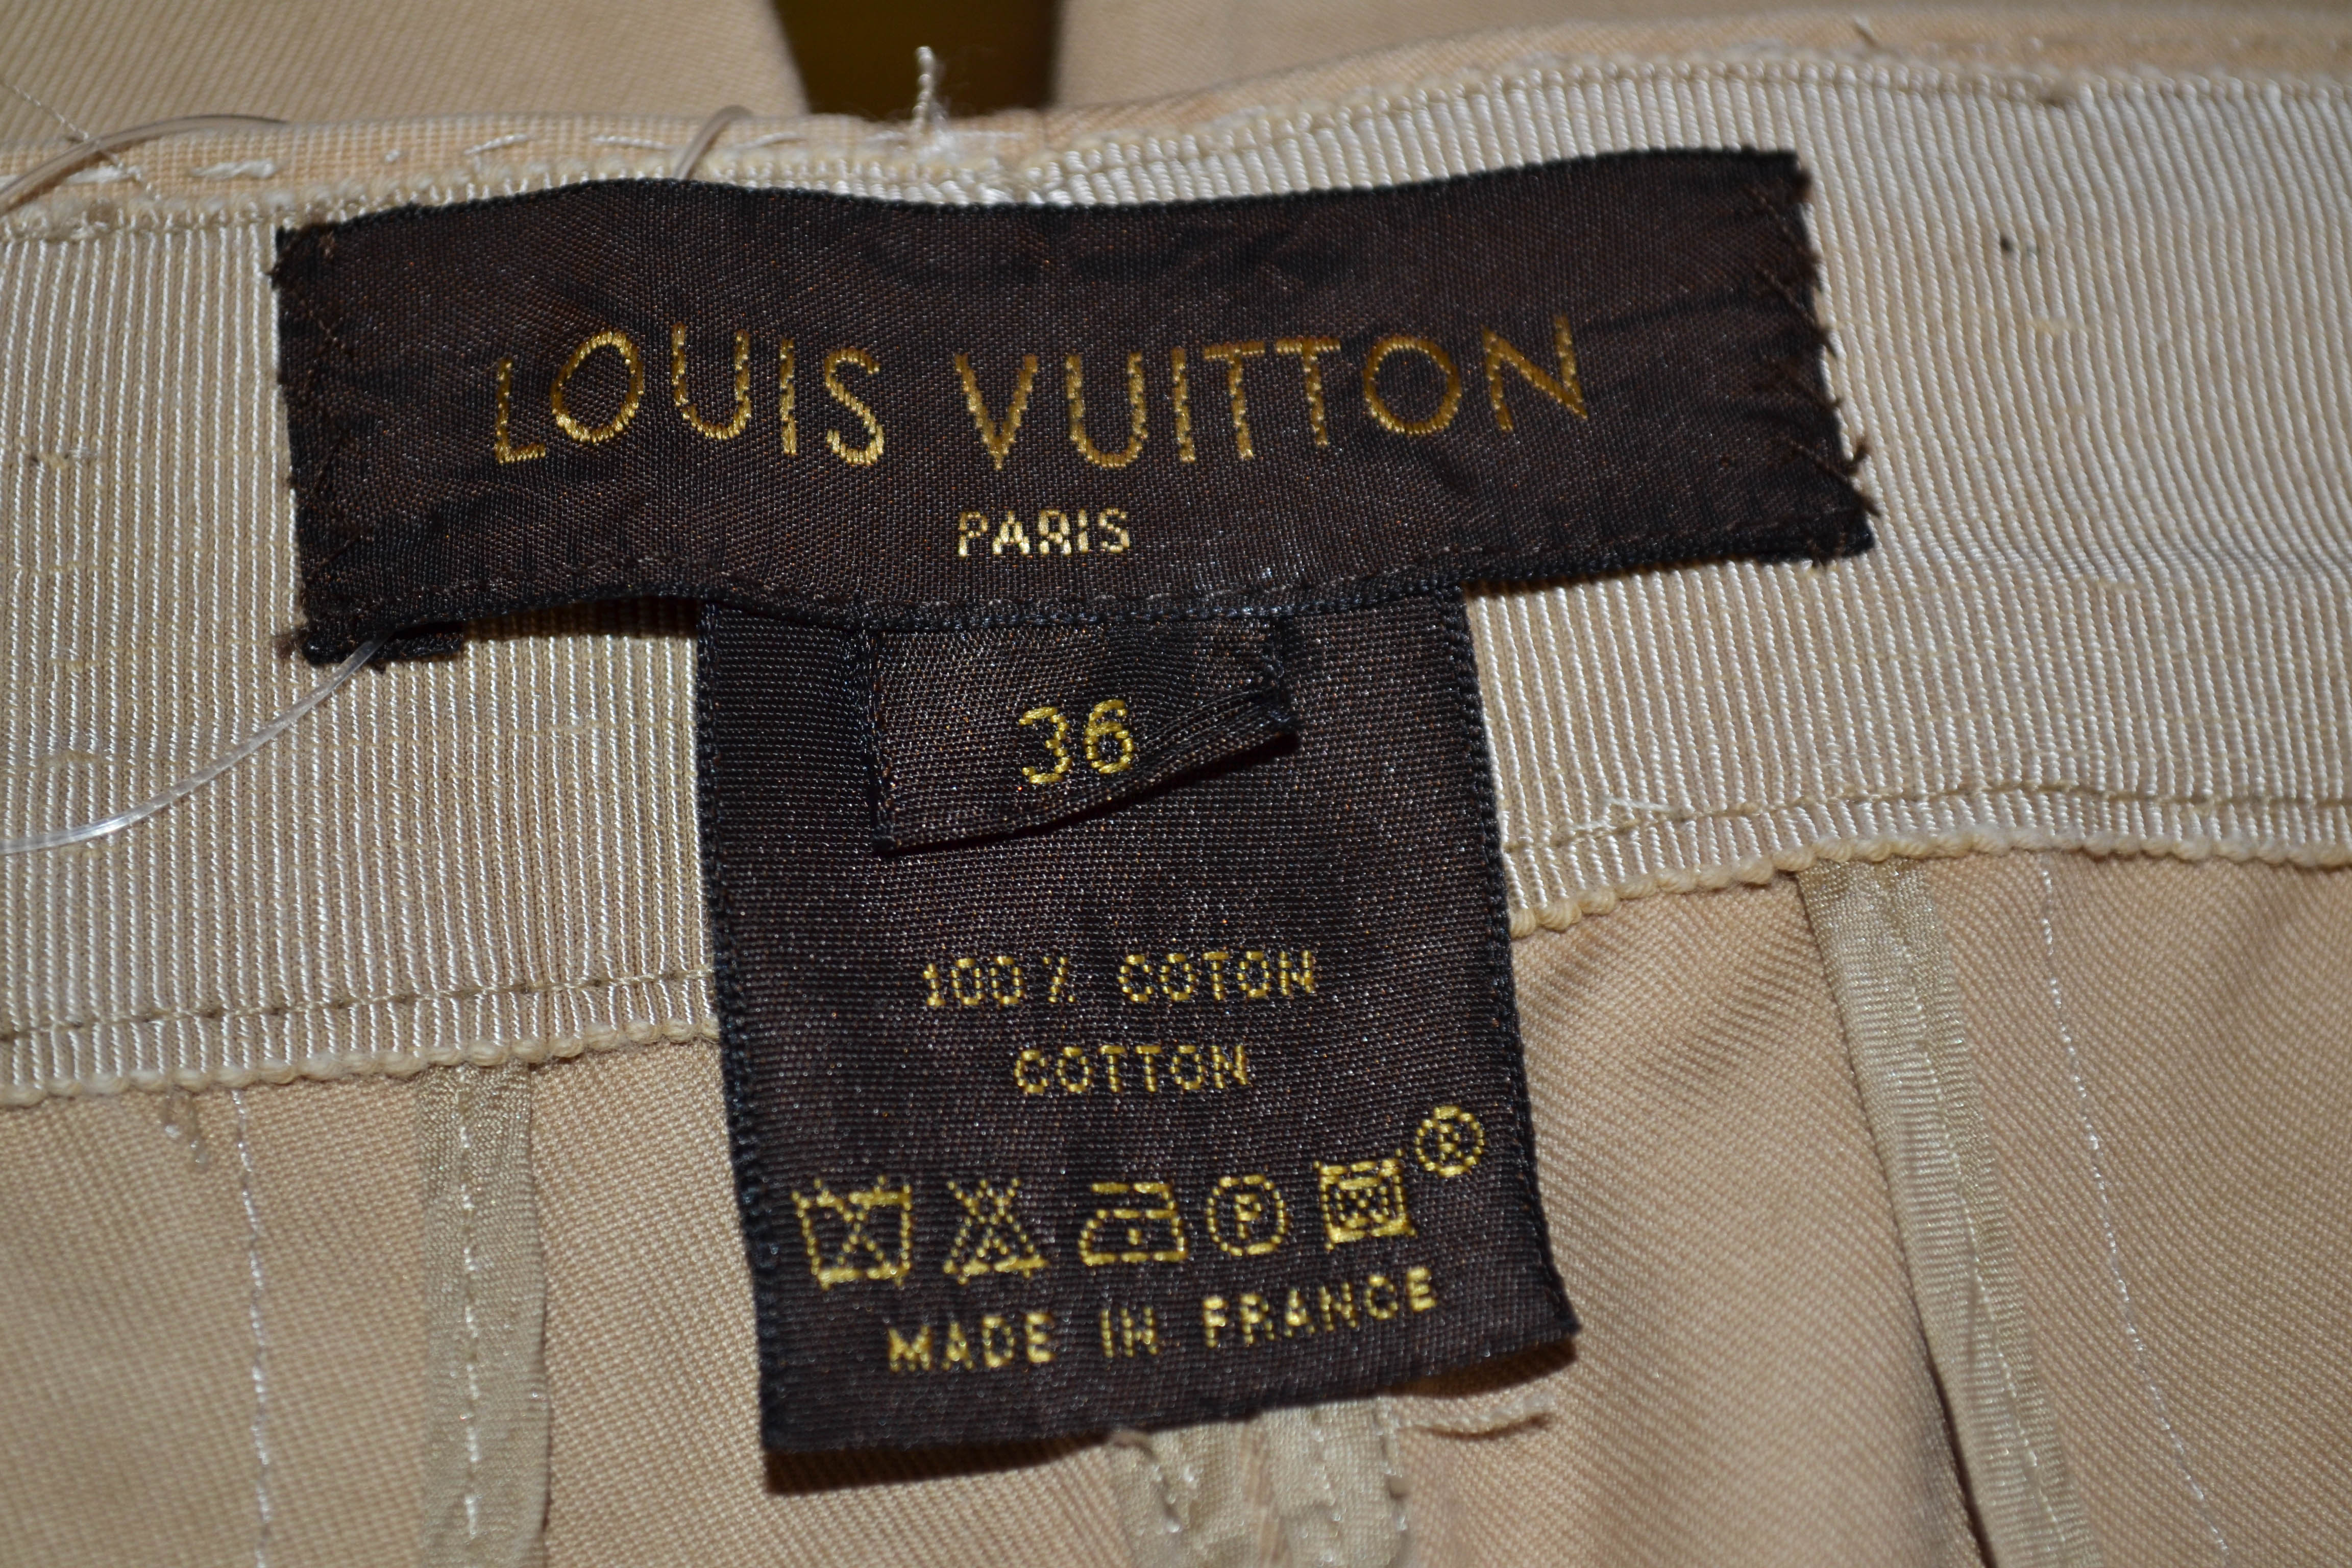 Authentic Louis Vuitton Beige Women's Khaki Pants Size 36